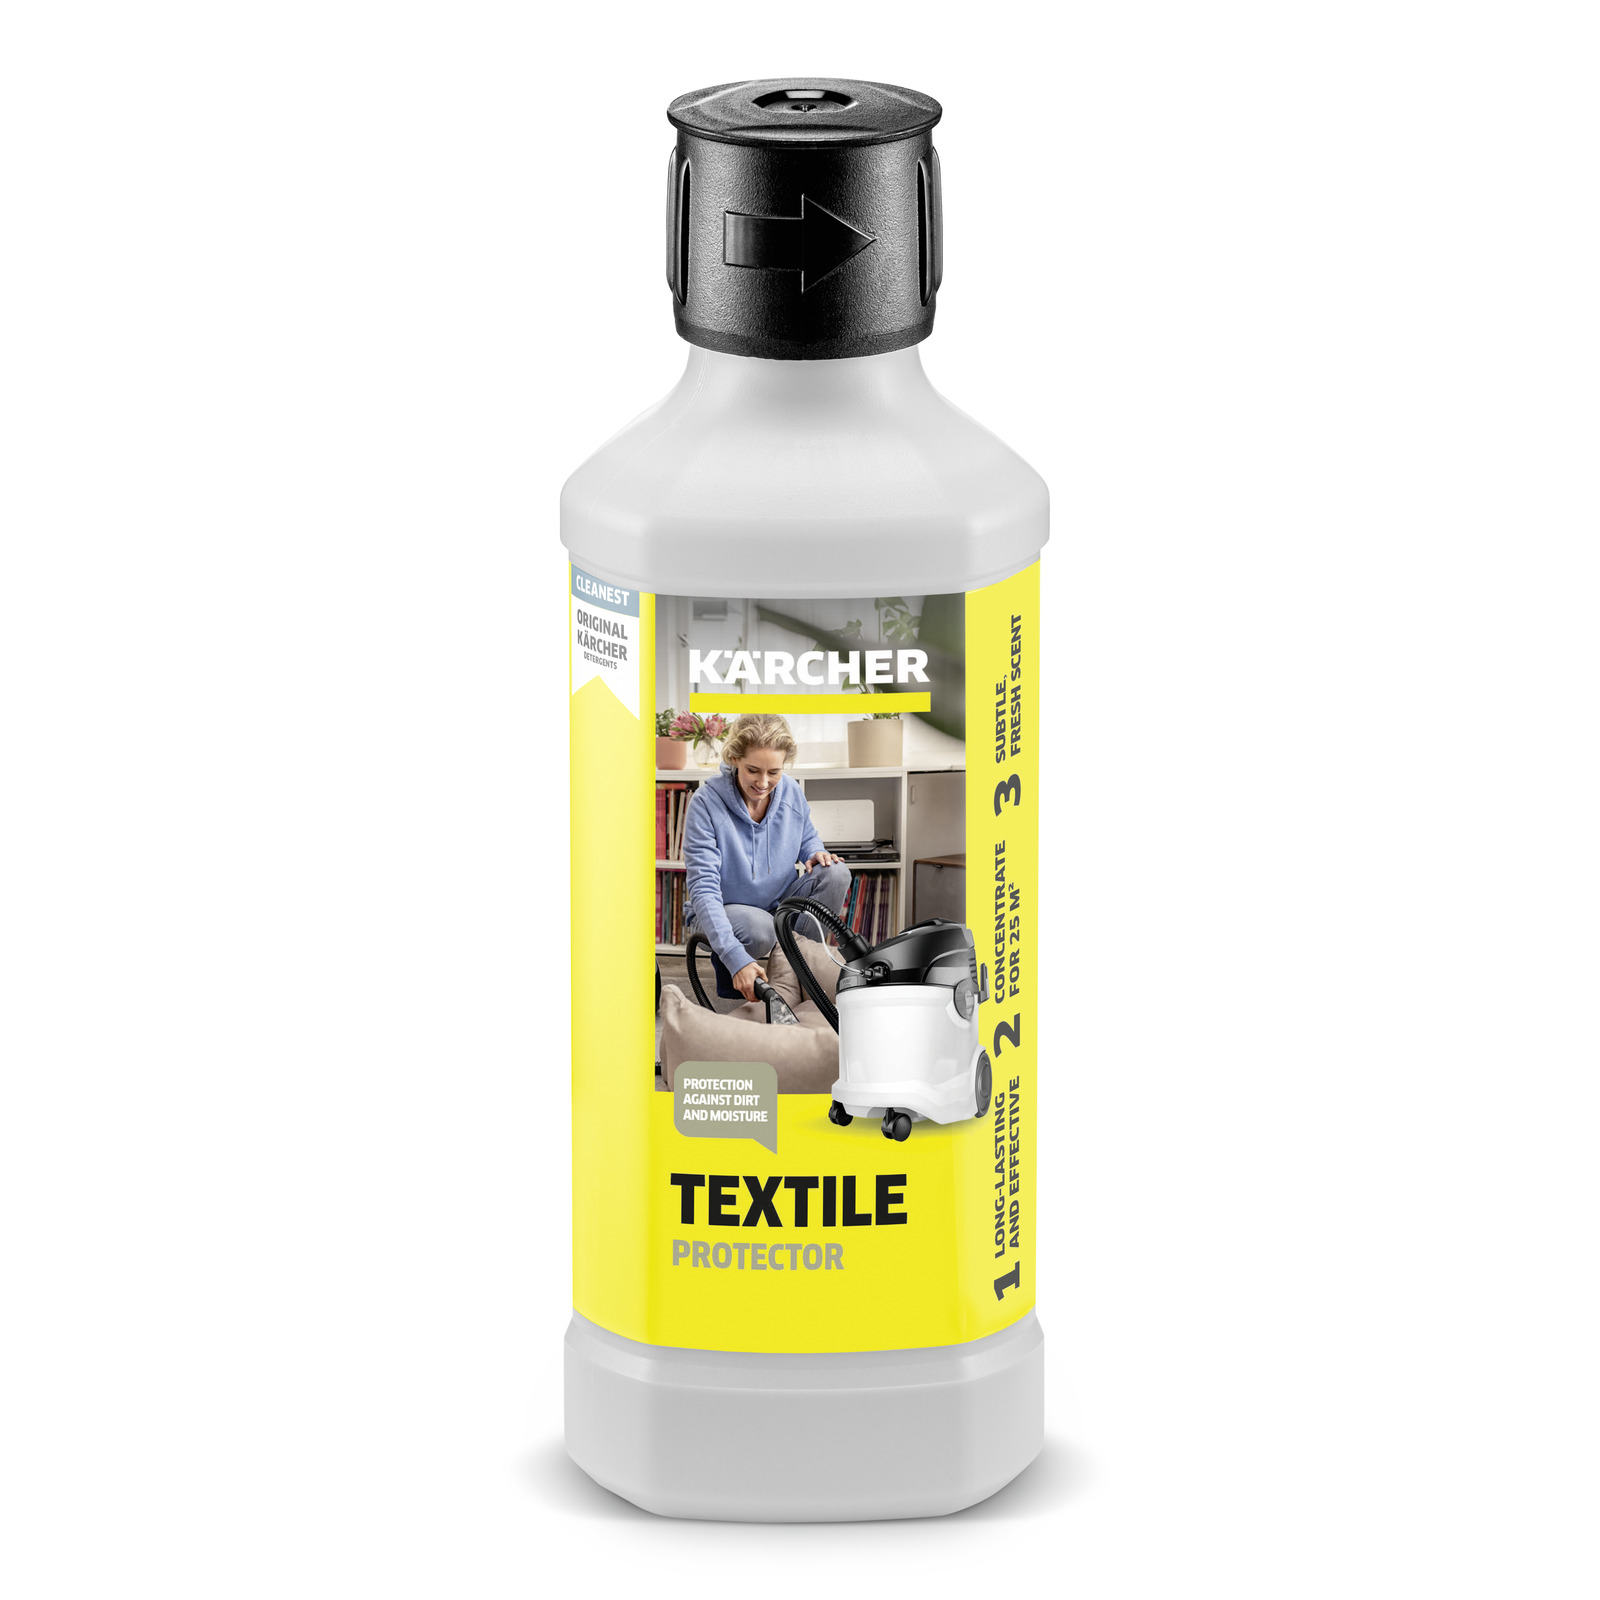 Solutie pentru protejarea textilelor Care Tex RM 762